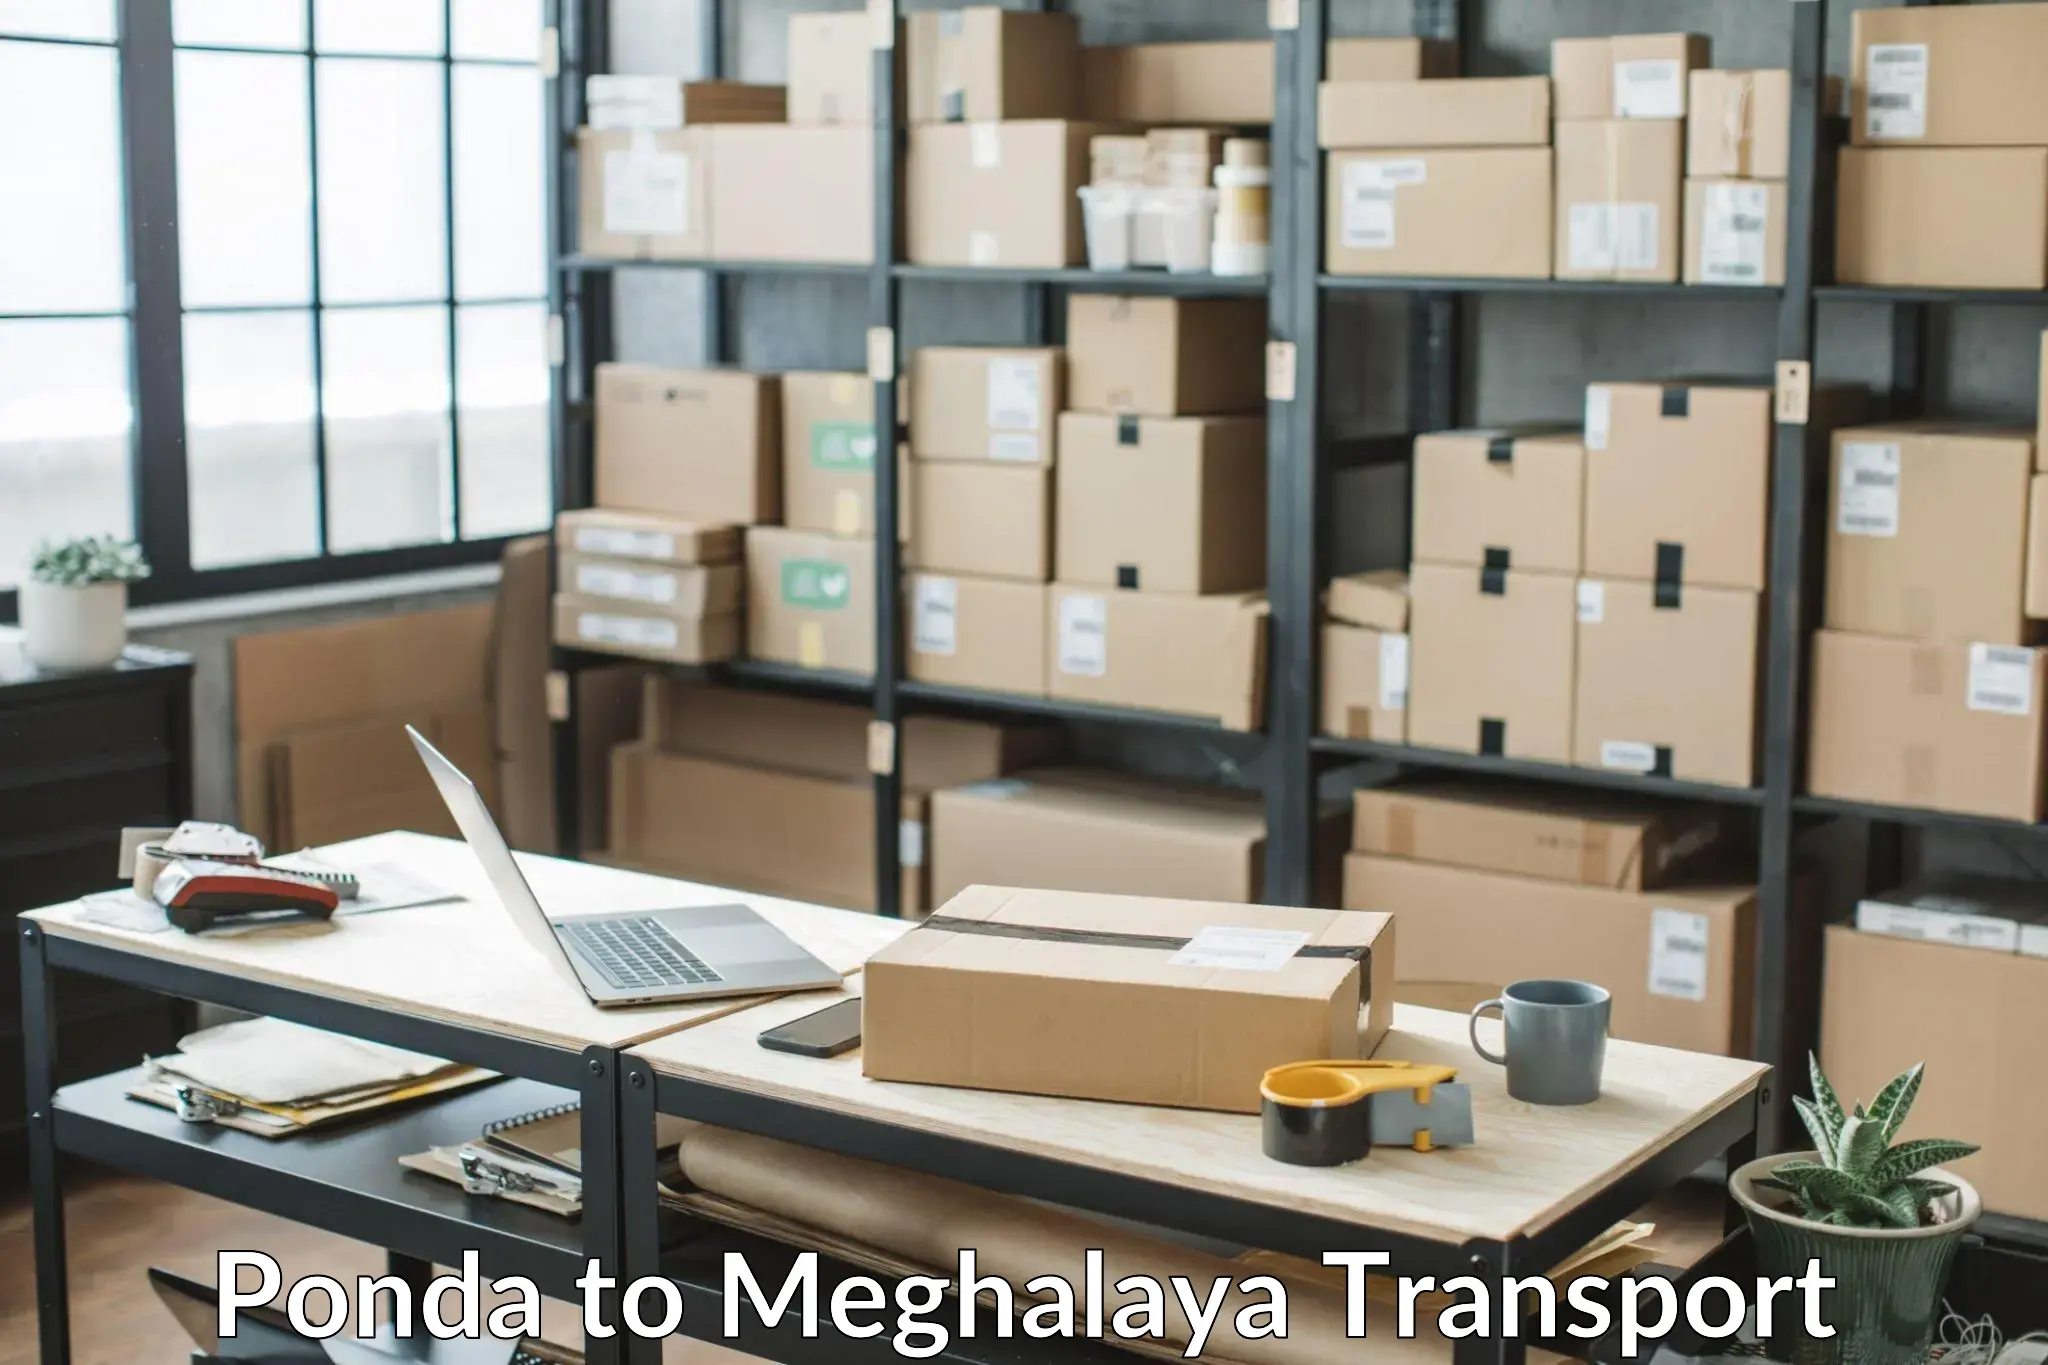 Delivery service Ponda to Meghalaya